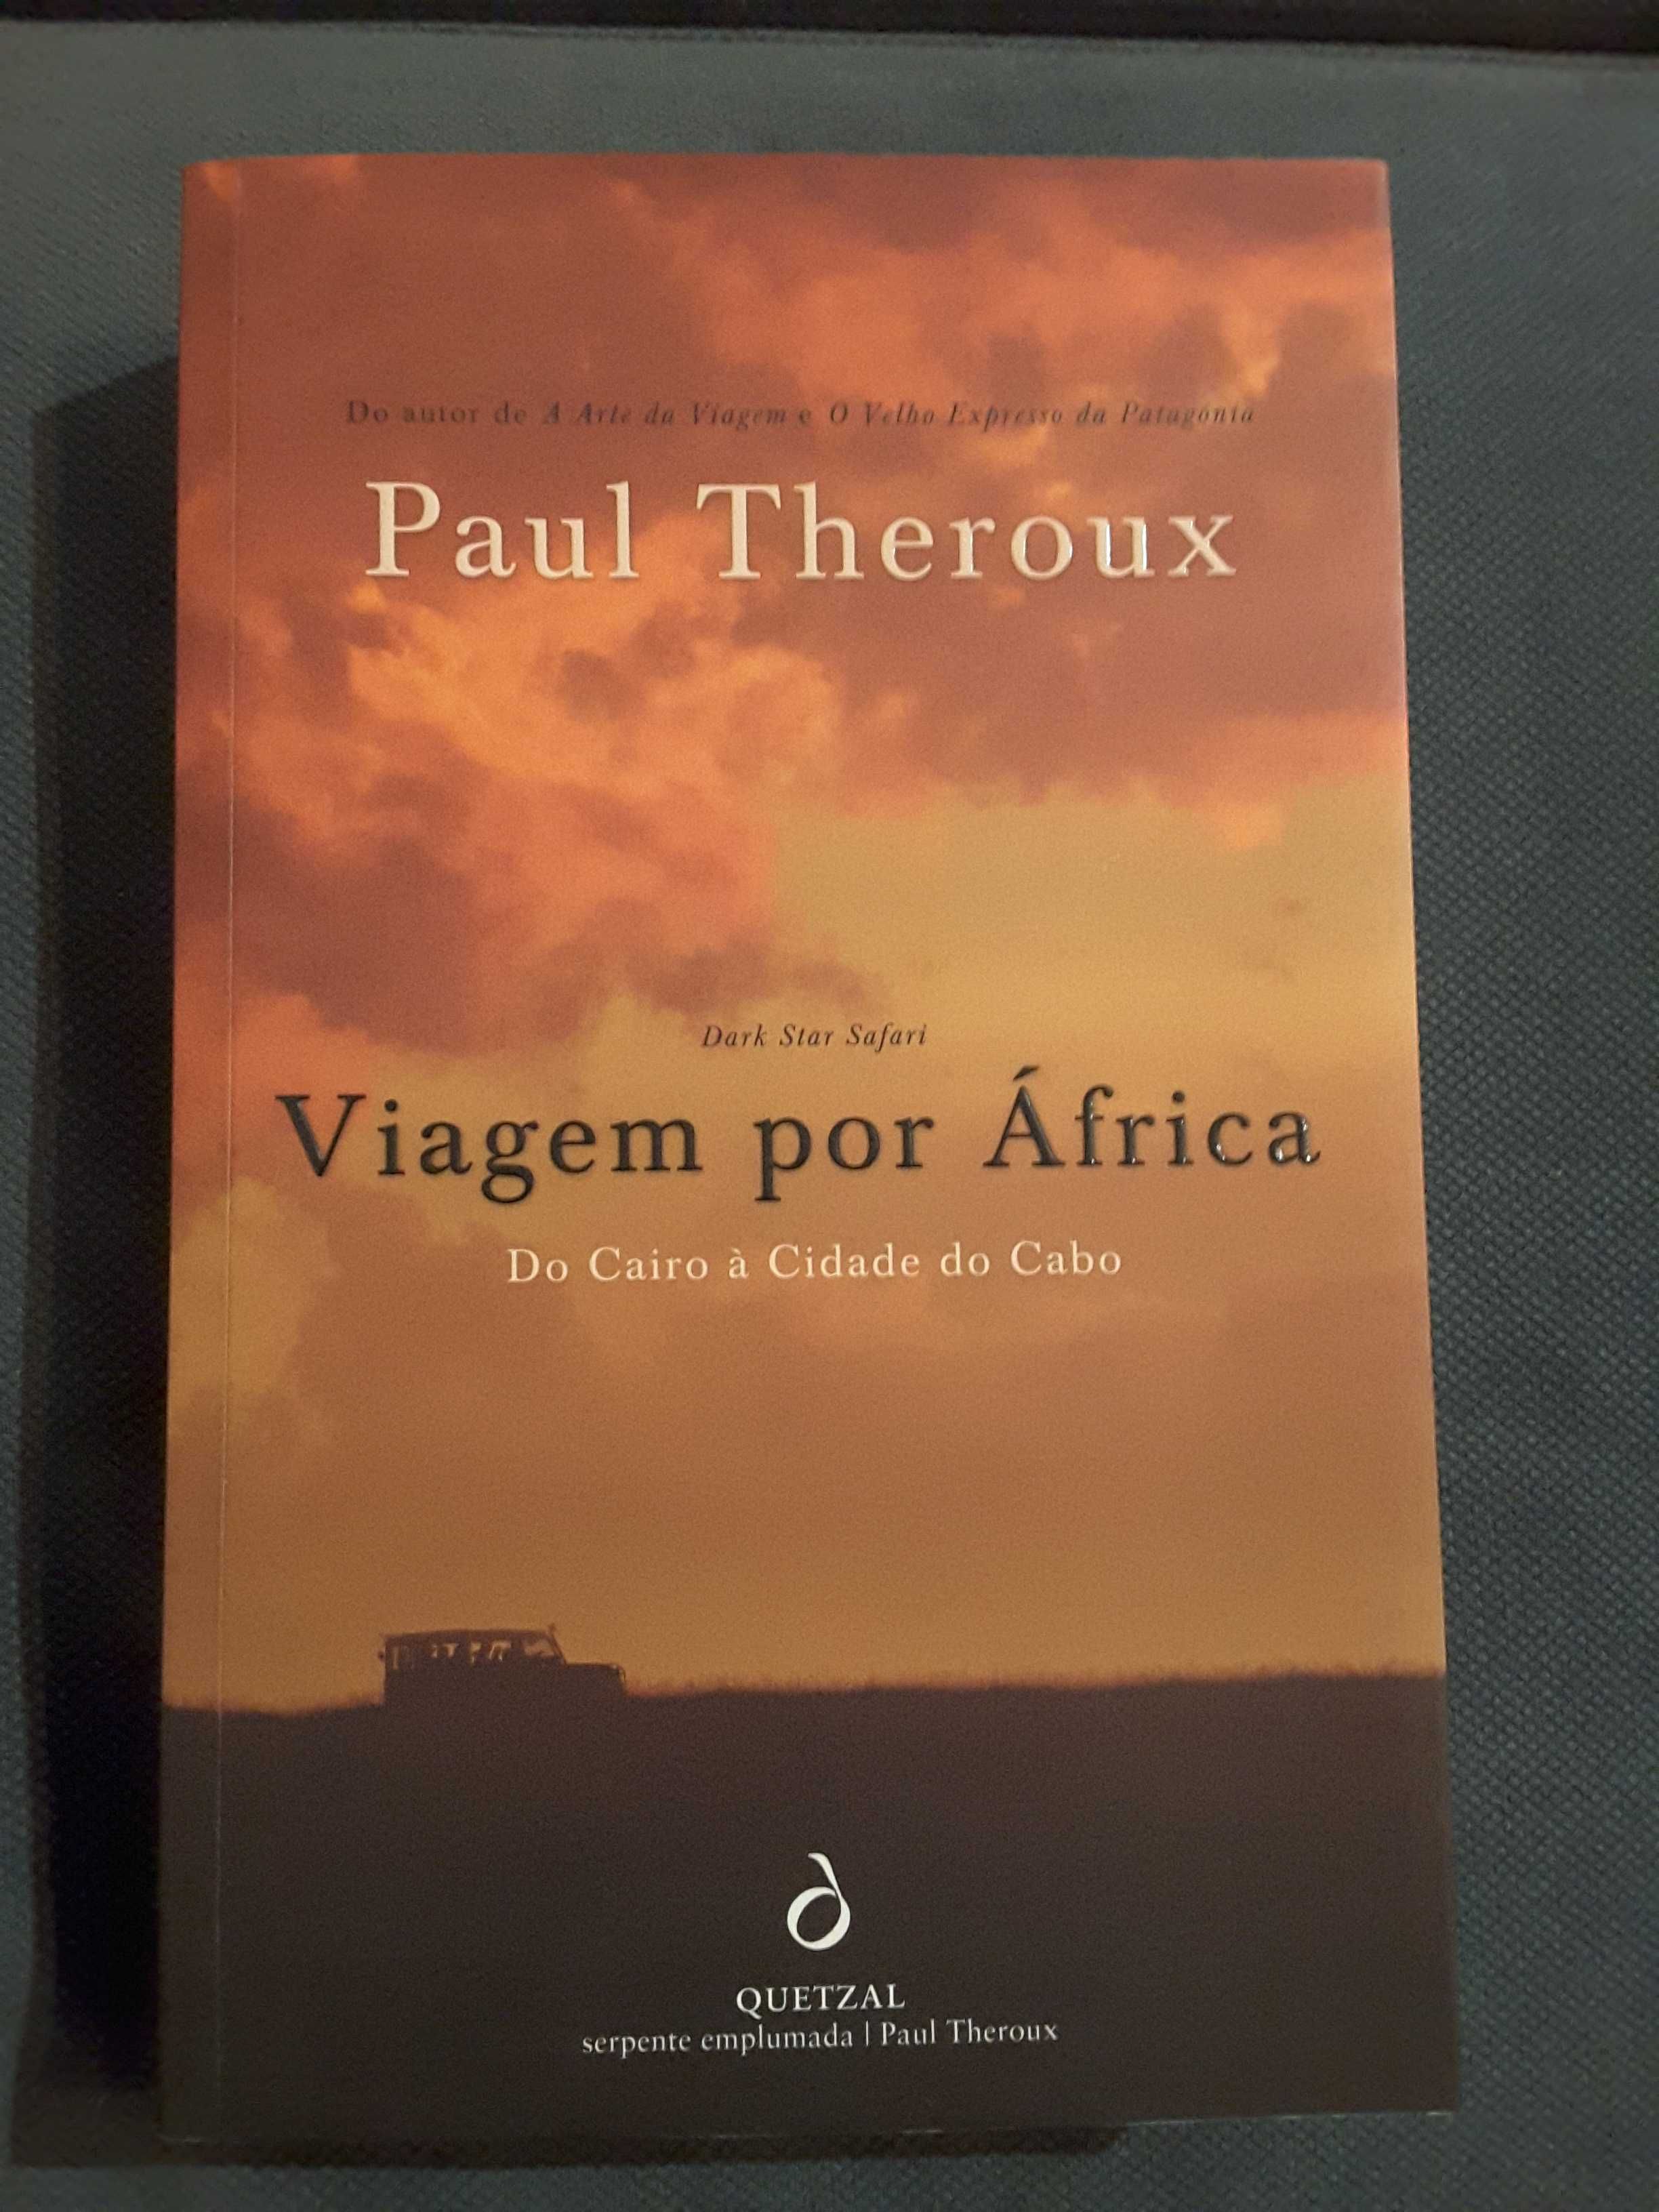 Unamuno: Antologia Poética/ P. Theroux: Viagem por África